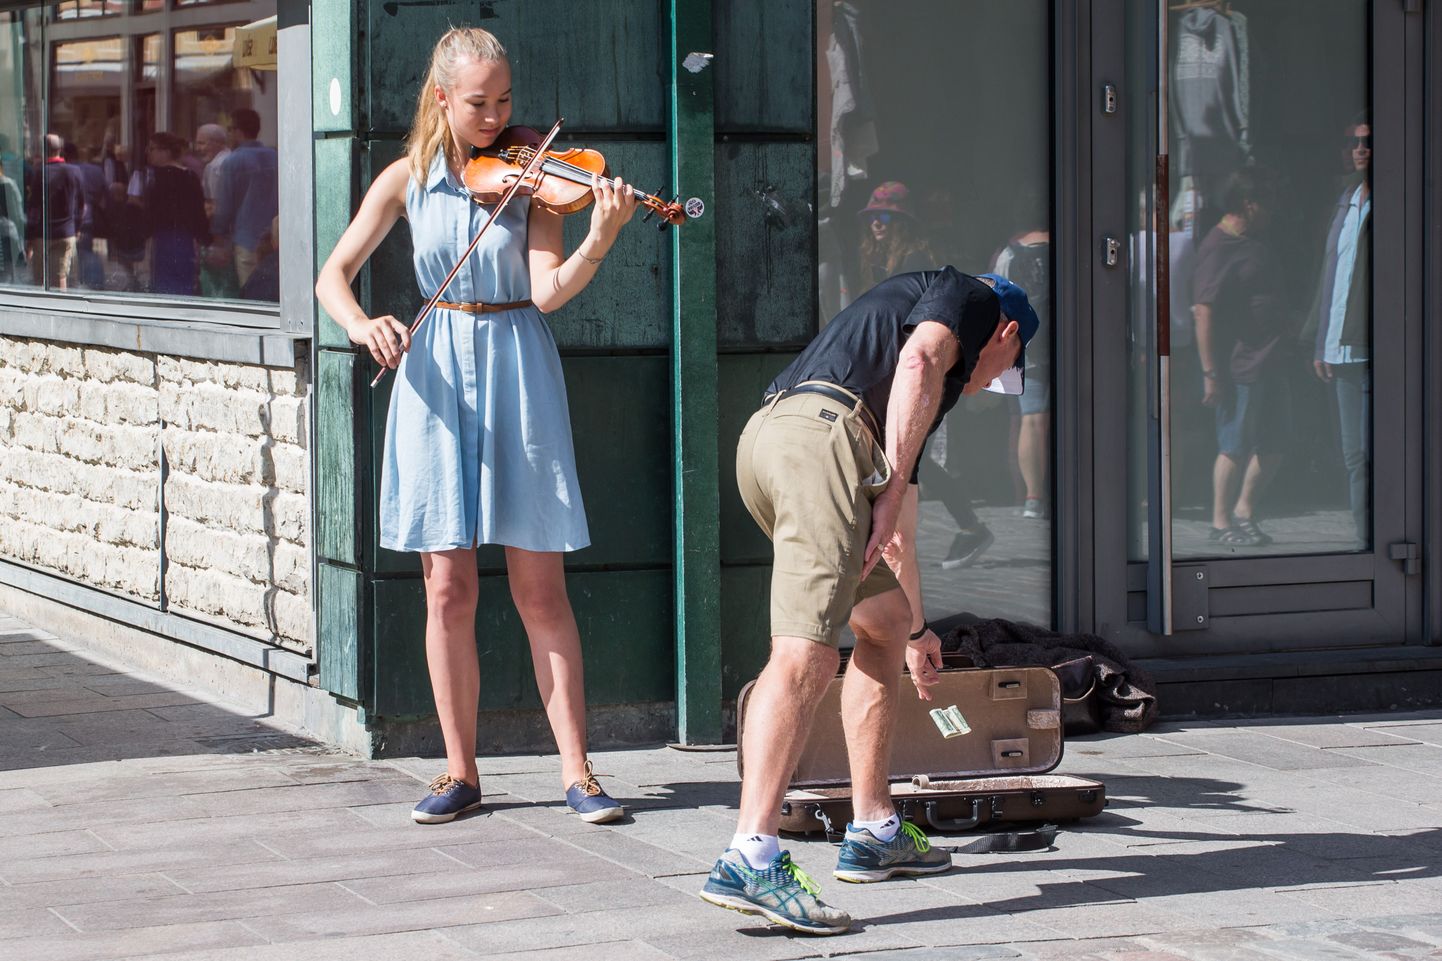 Viru tänaval on tänavamuusiku teenistus kõige parem: esimese kümne minutiga teenib viiulimänguga pea kümme eurot.